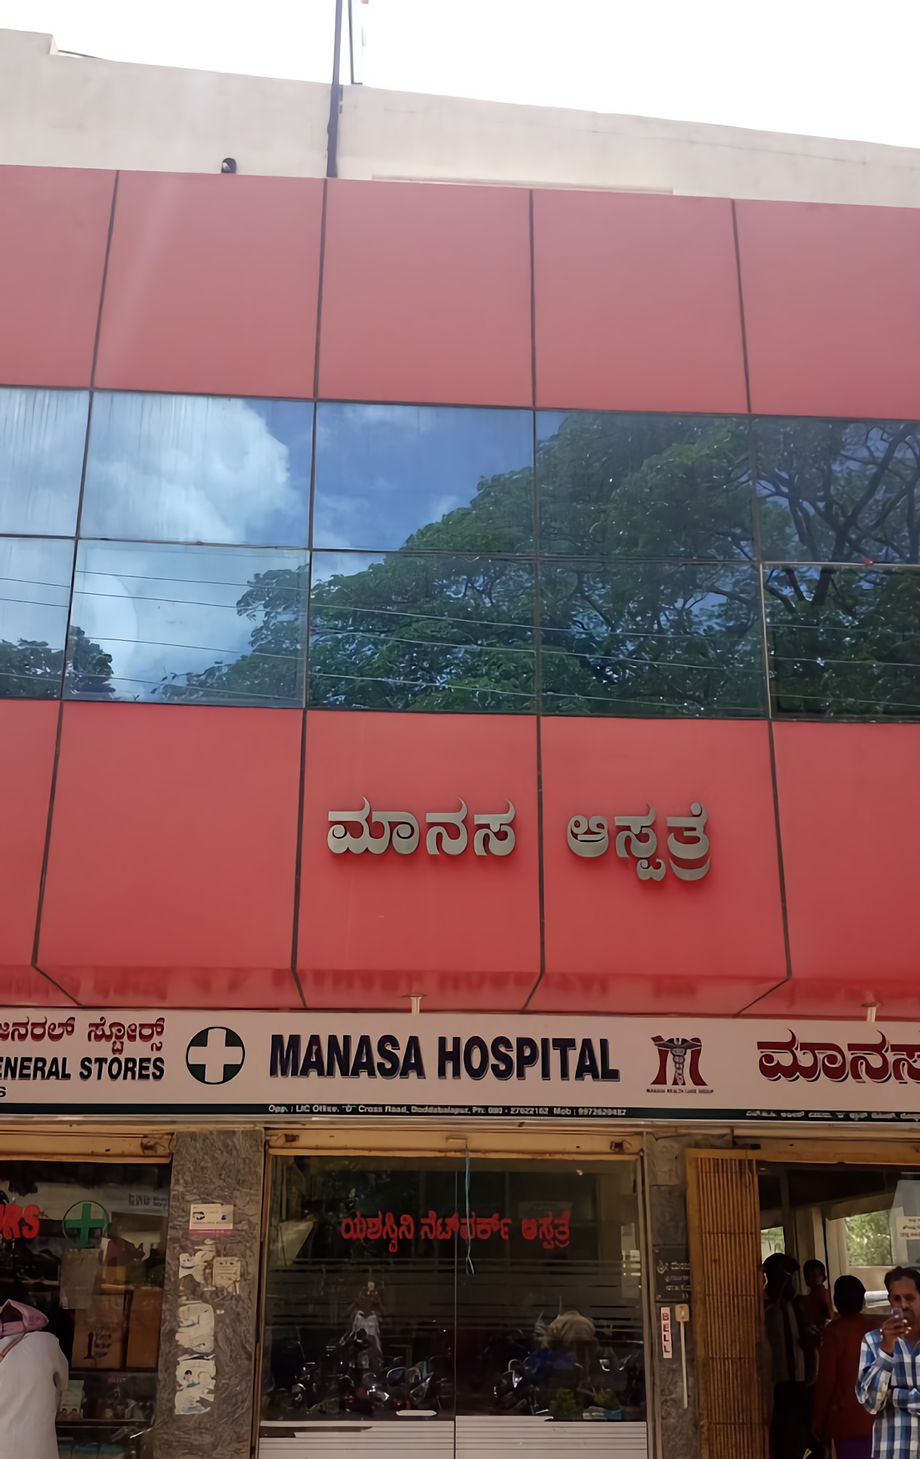 Manasa Hospital